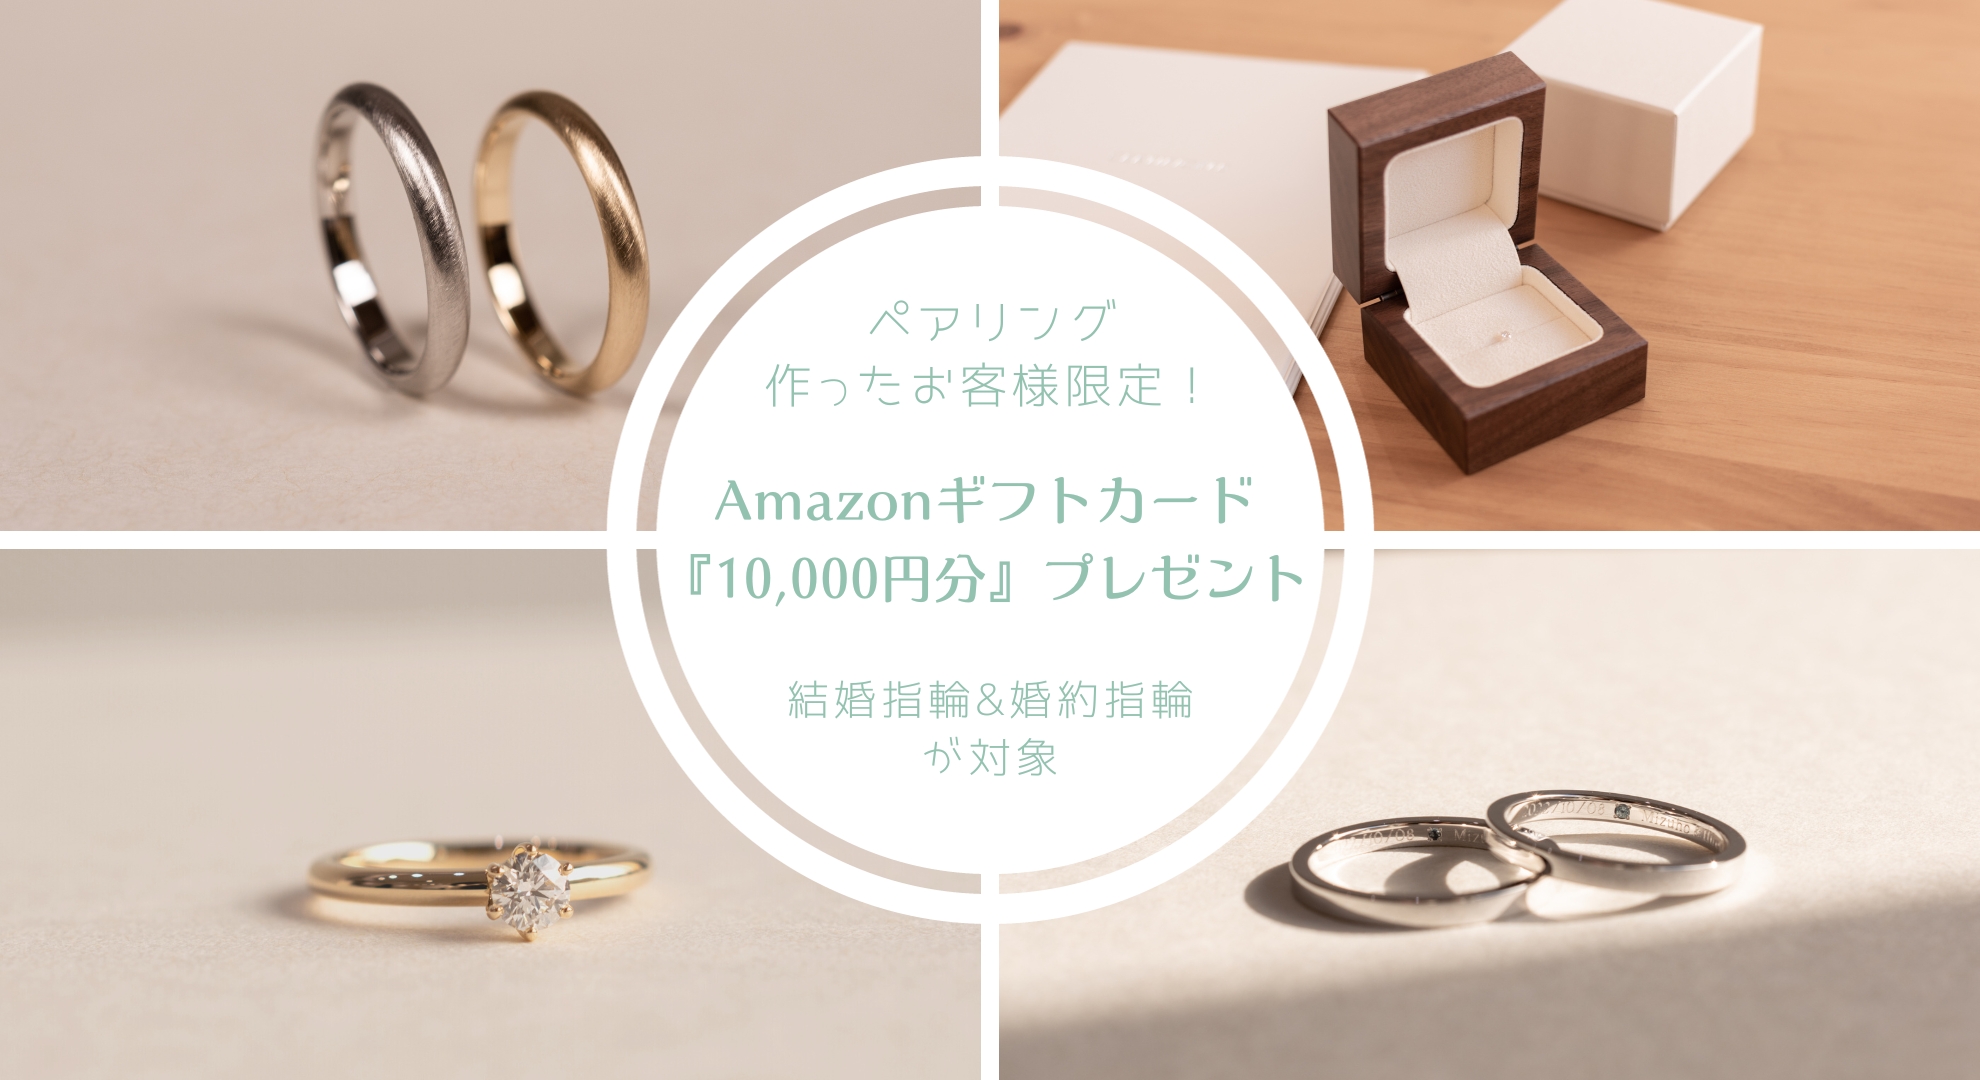 お得なキャンペーン,当店でペアリングを作ったお客様限定,結婚指輪か婚約指輪を作るとAmazonギフトカード10,000円分プレゼント